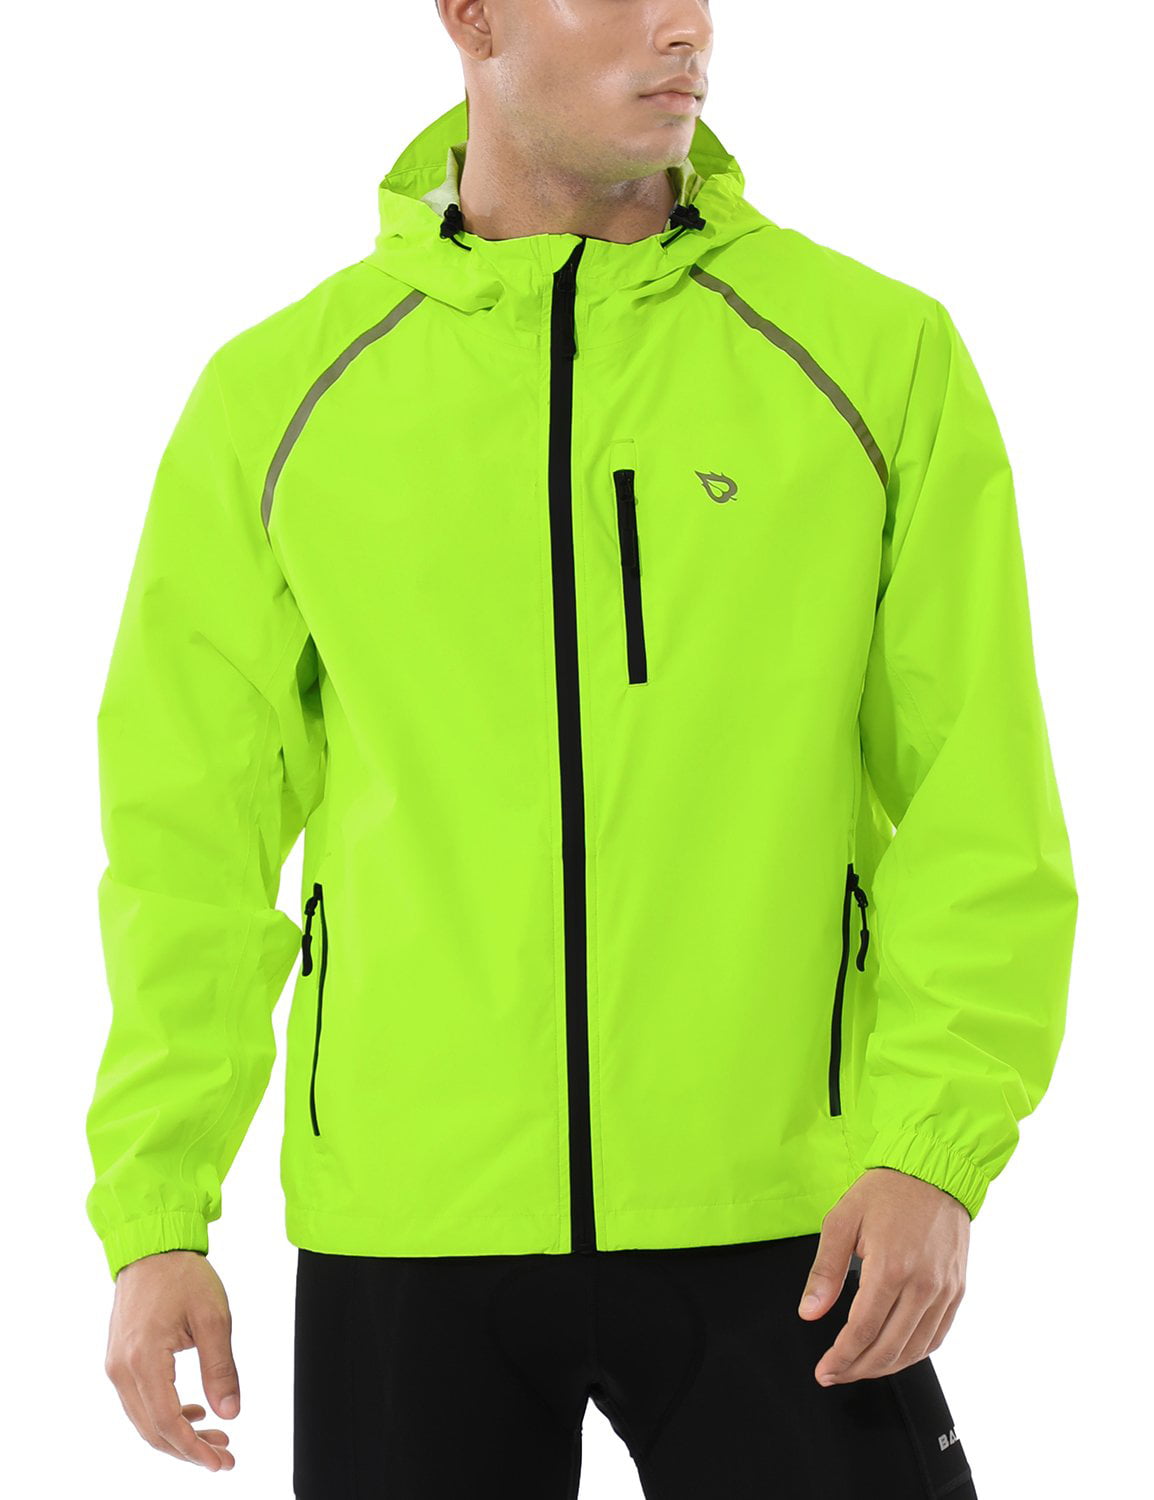 Mens Wind Jacket Lightweight Cycling Windshell Running Windbreaker Sportswear 